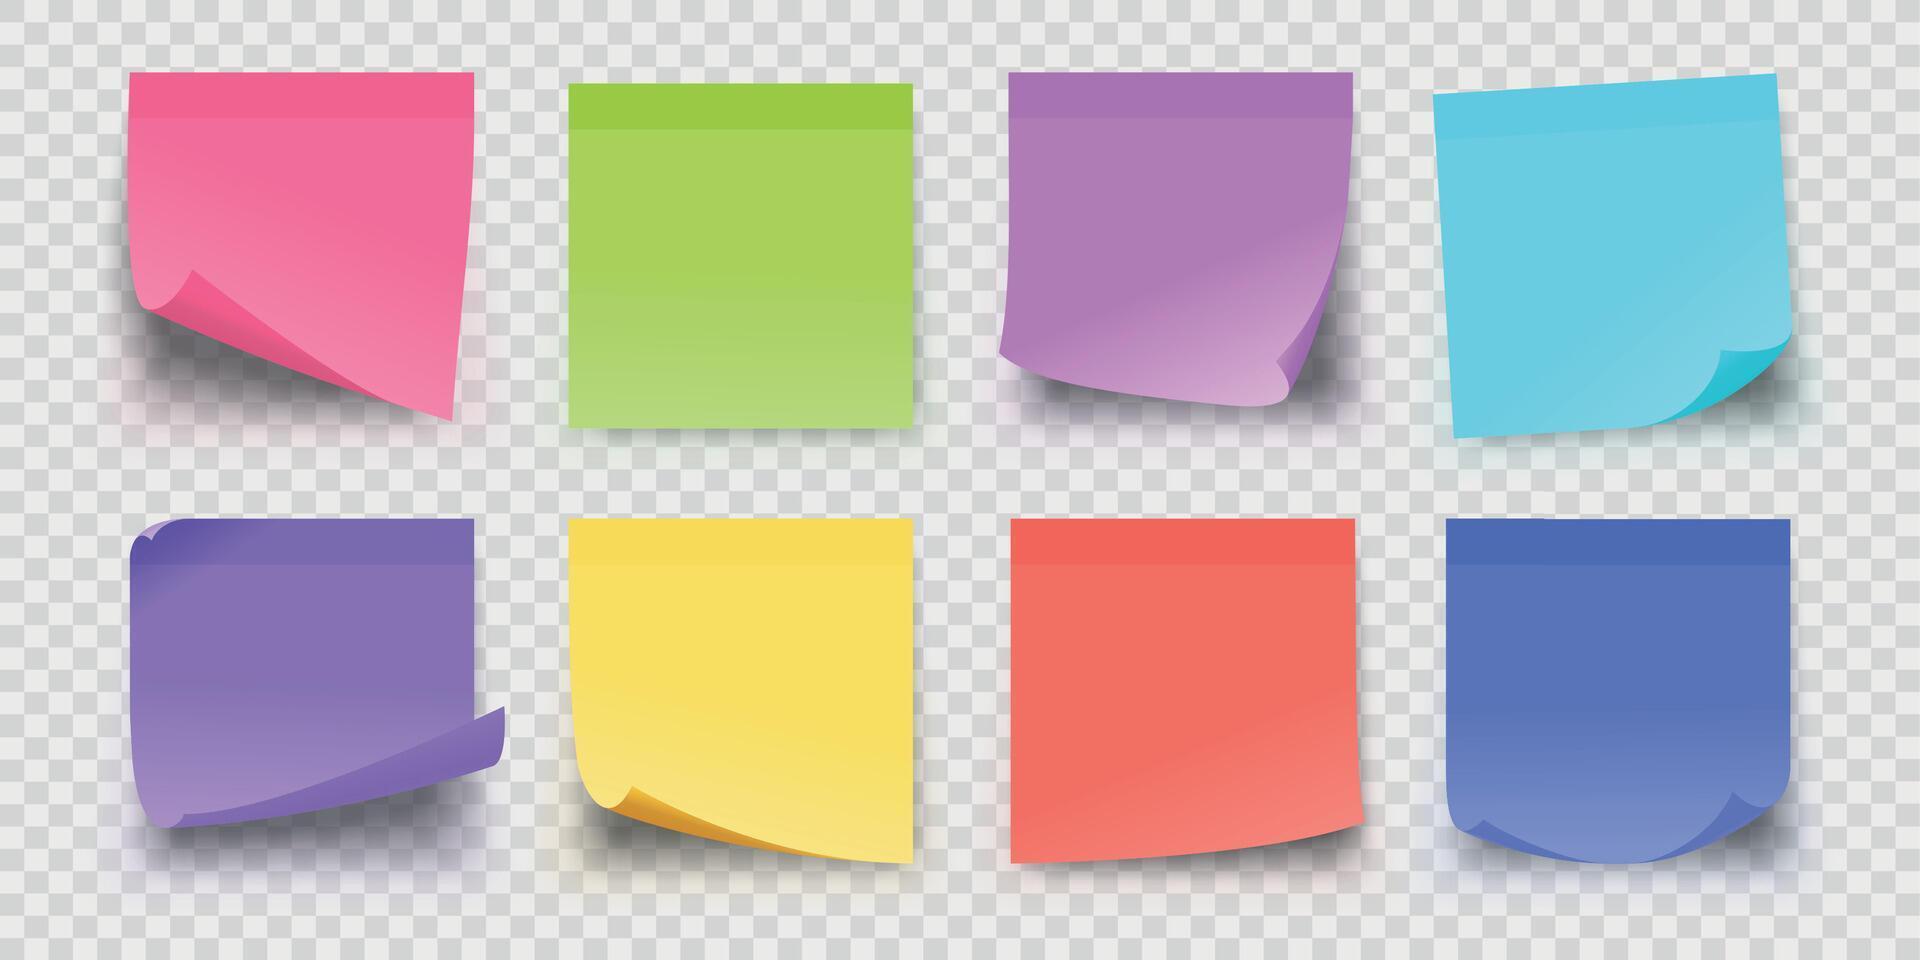 realista oficina pegajoso papel recordatorio notas en colores. adhesivo cuadrado memorándum paginas para importante mensajes pegatina enviar bloc vector conjunto